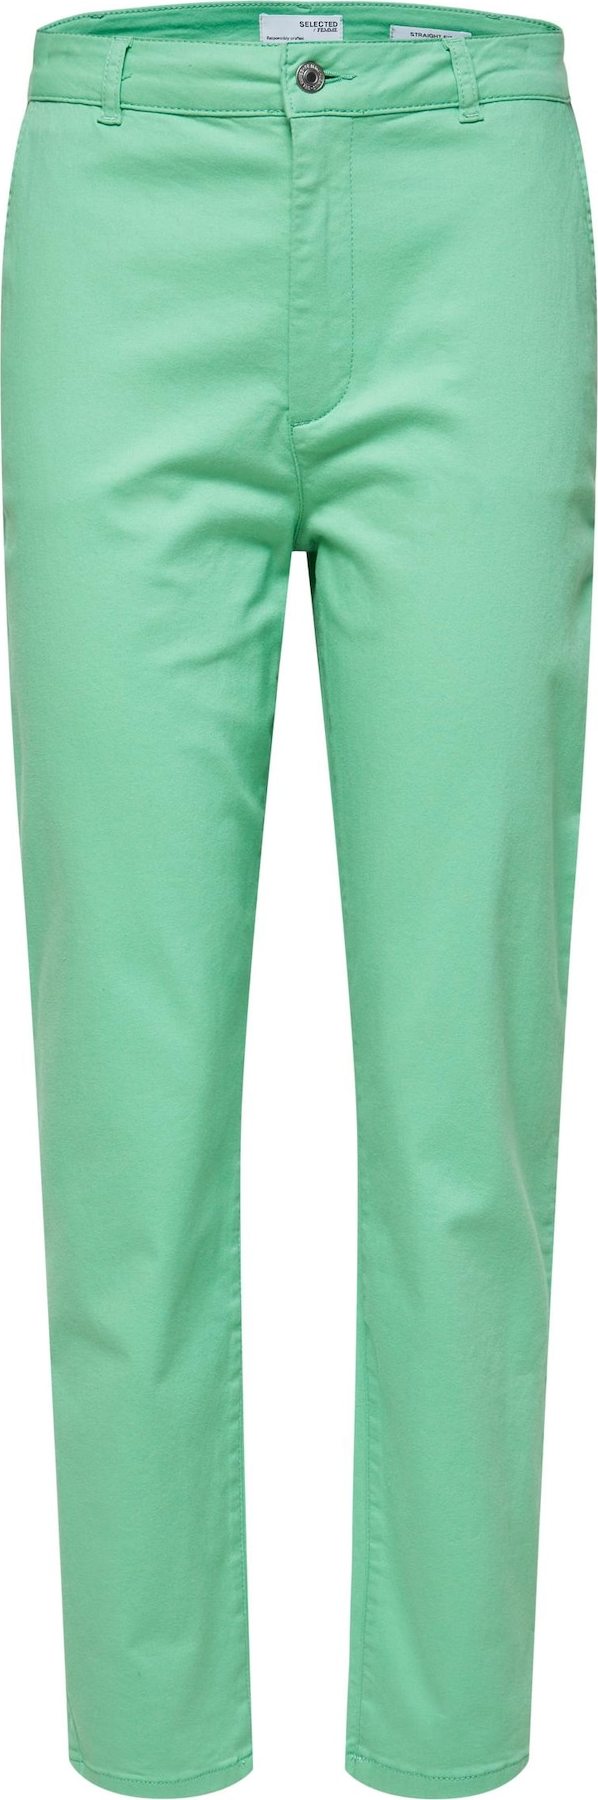 SELECTED FEMME Chino kalhoty 'Marina' světle zelená